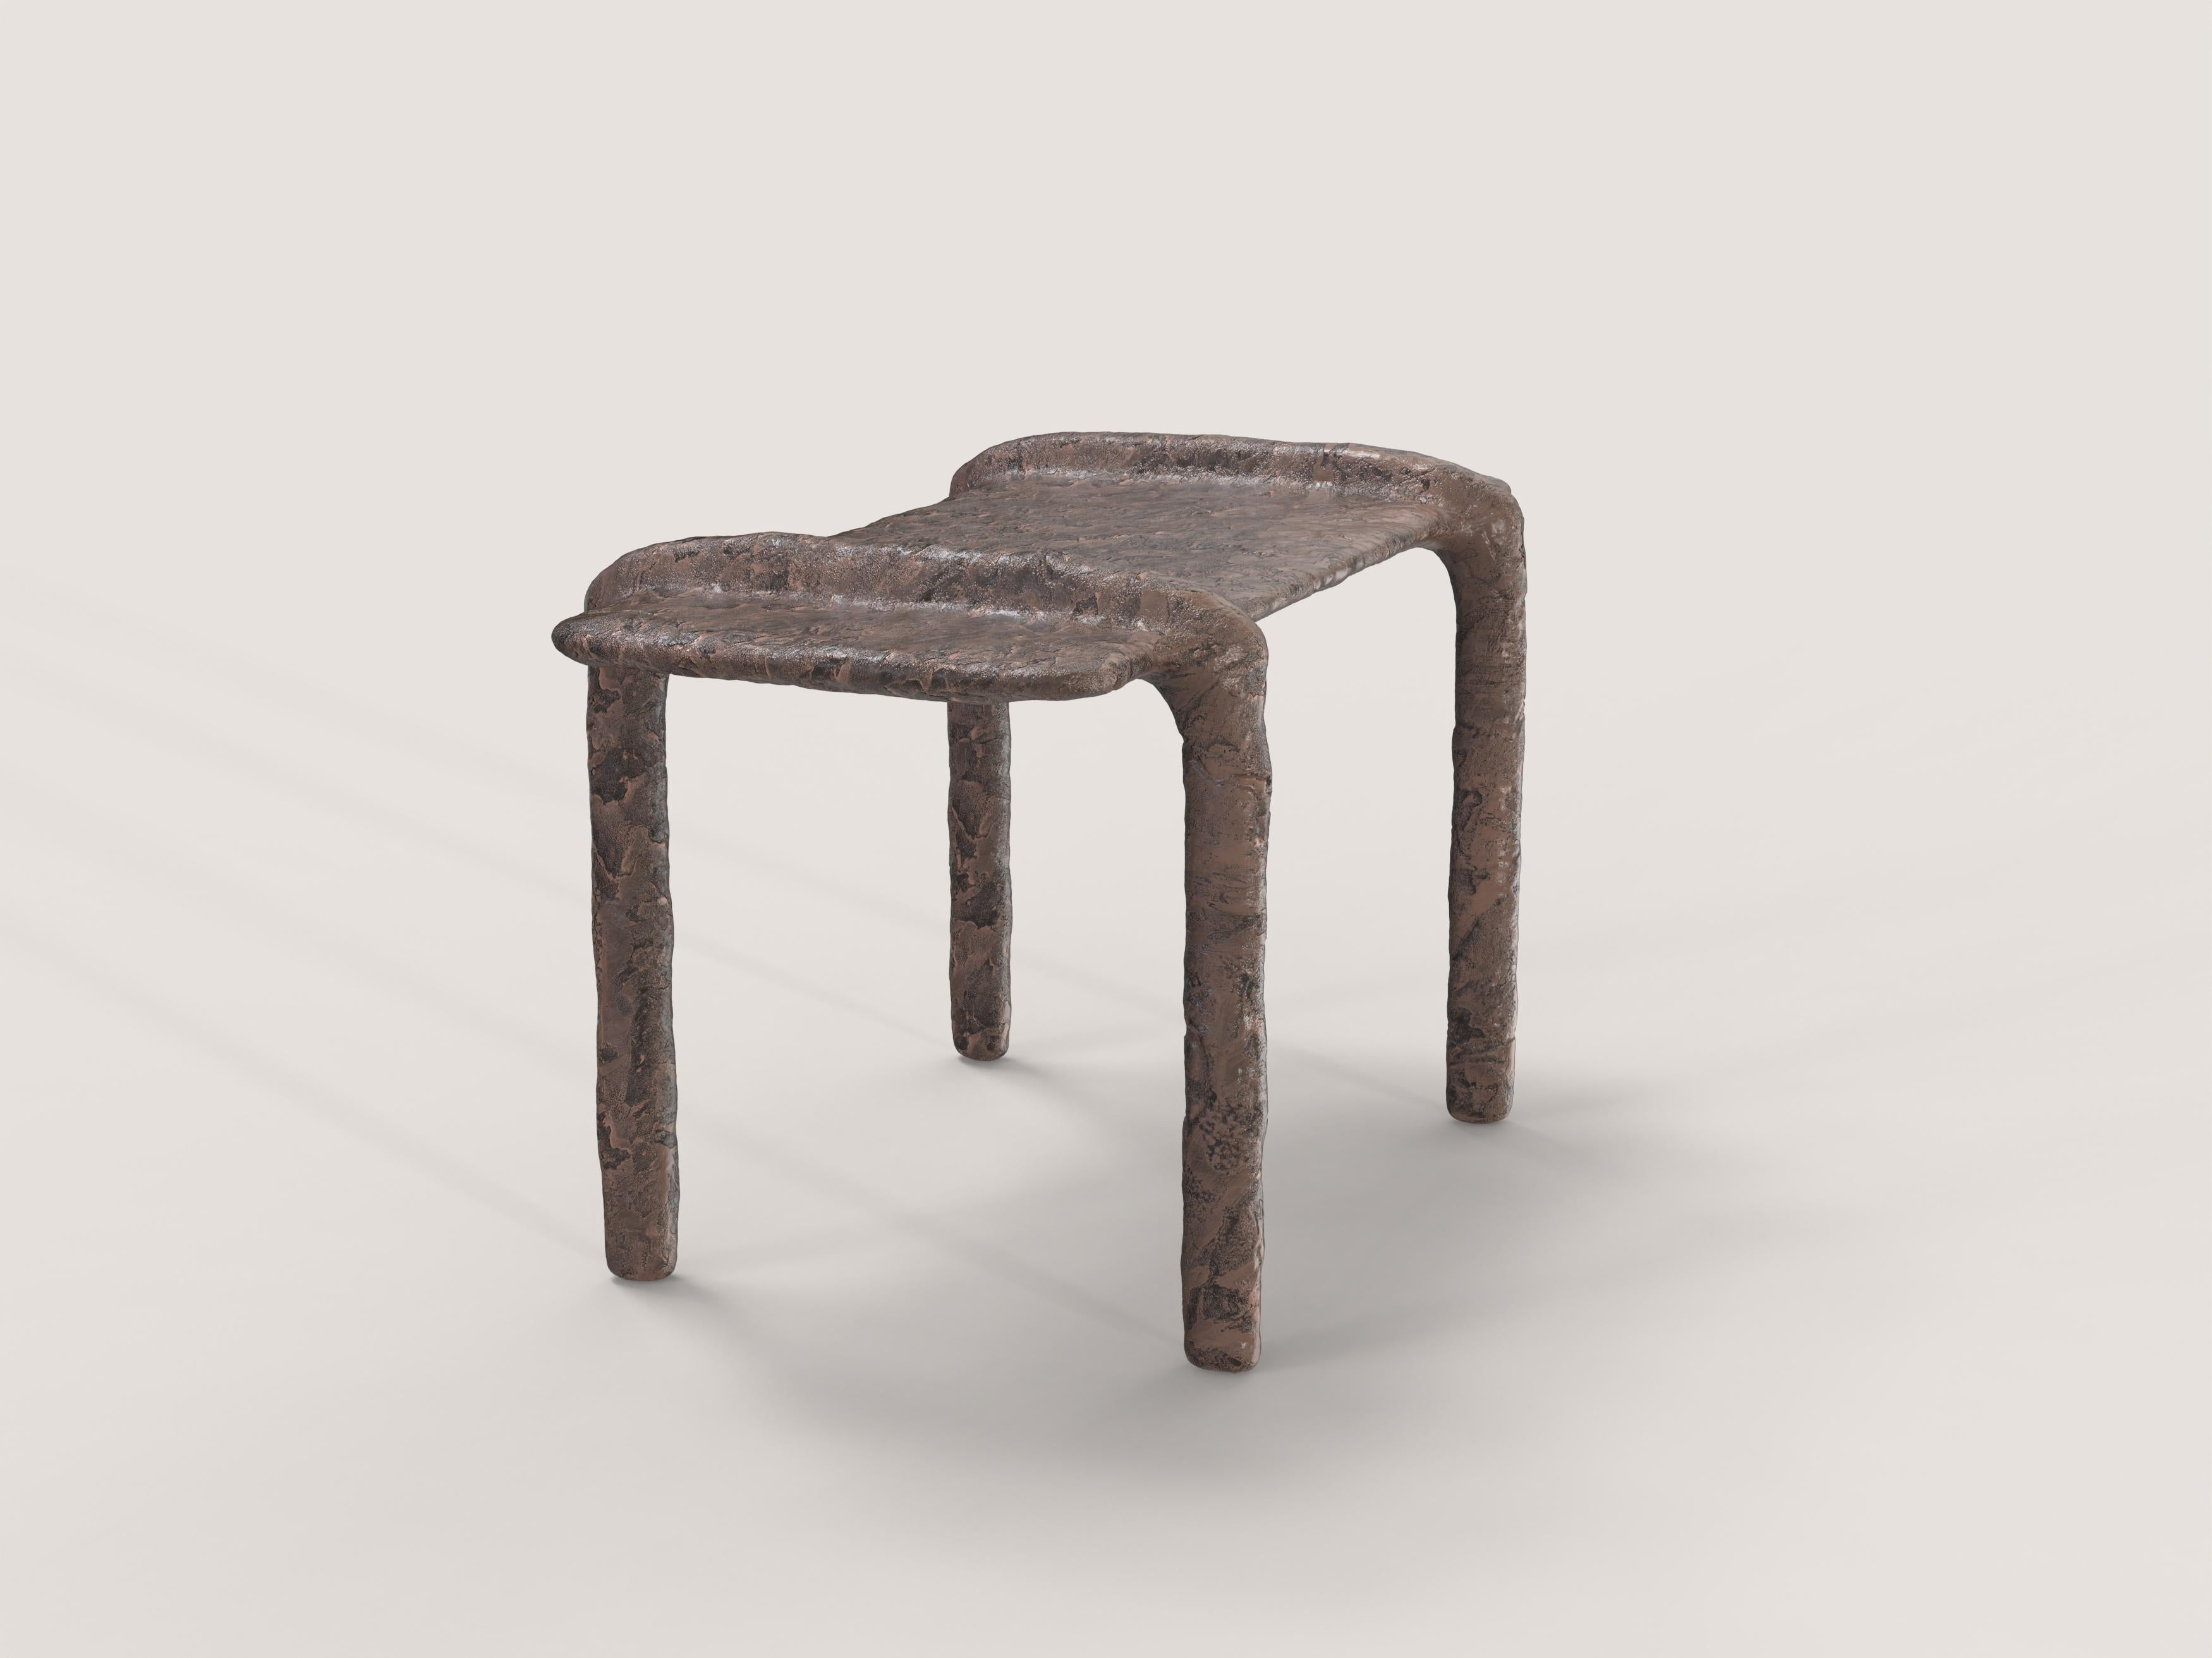 Italian Contemporary Limited Edition Bronze Side Table, Ala V1 by Edizione Limitata For Sale